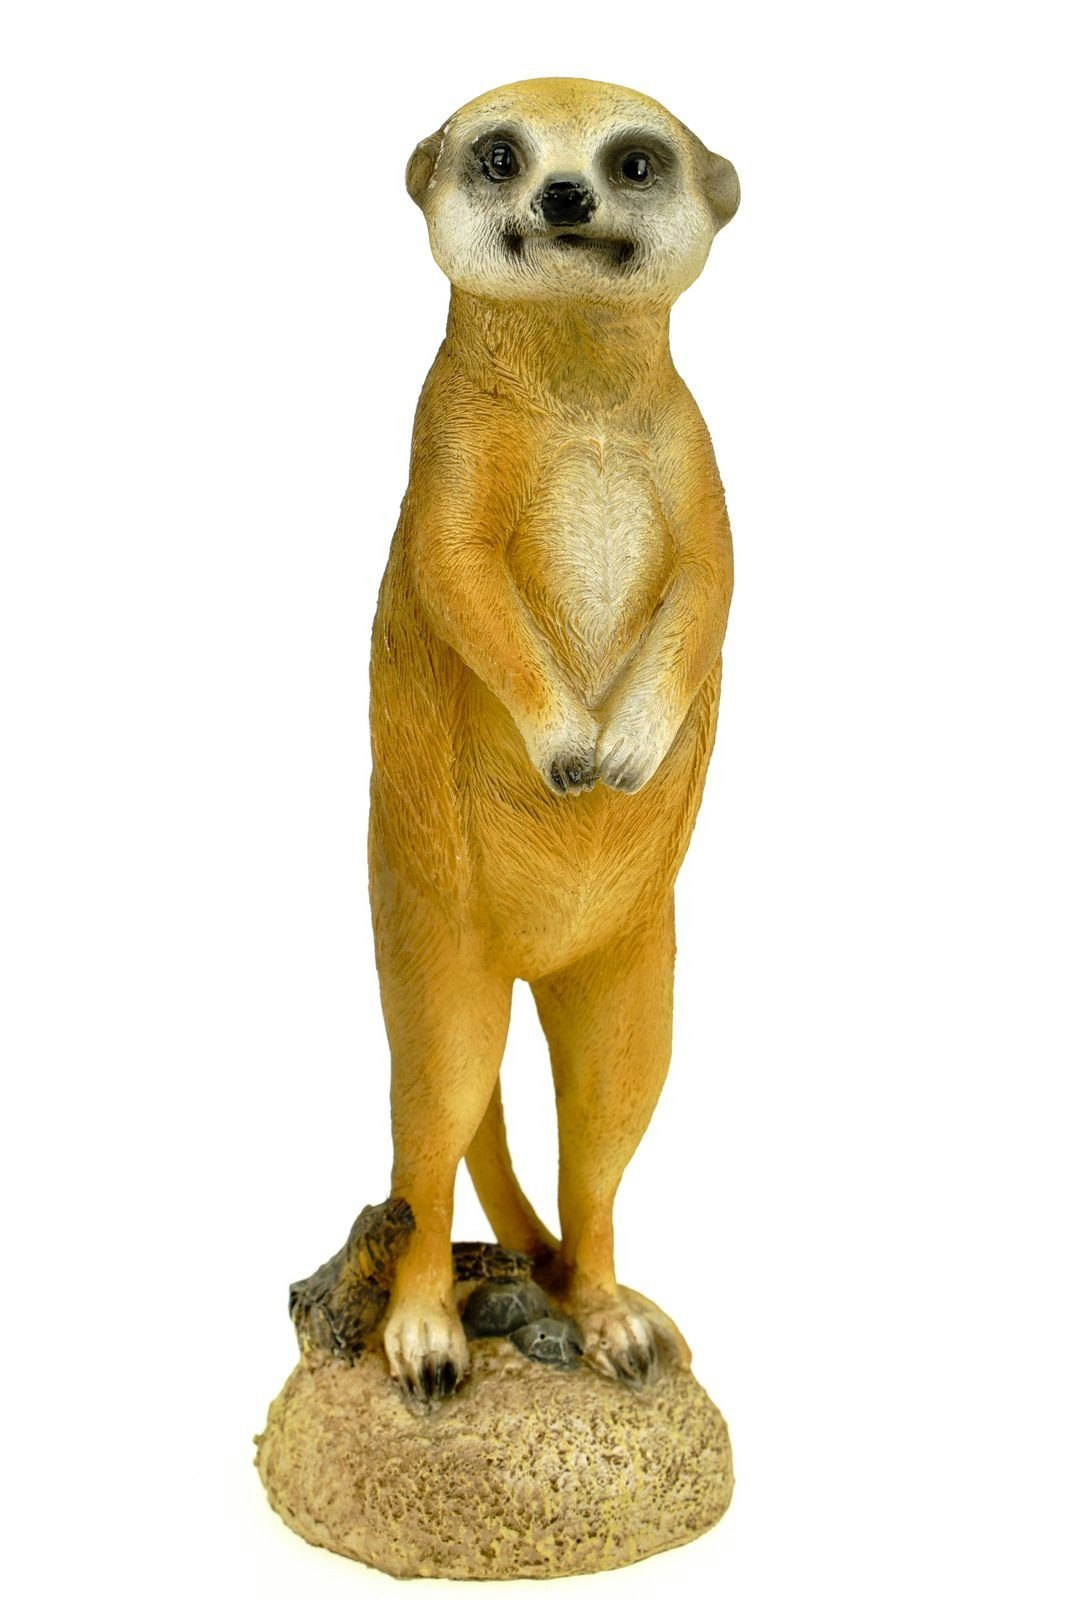 Kremers Schatzkiste Gartenfigur Kleines Erdmännchen stehend